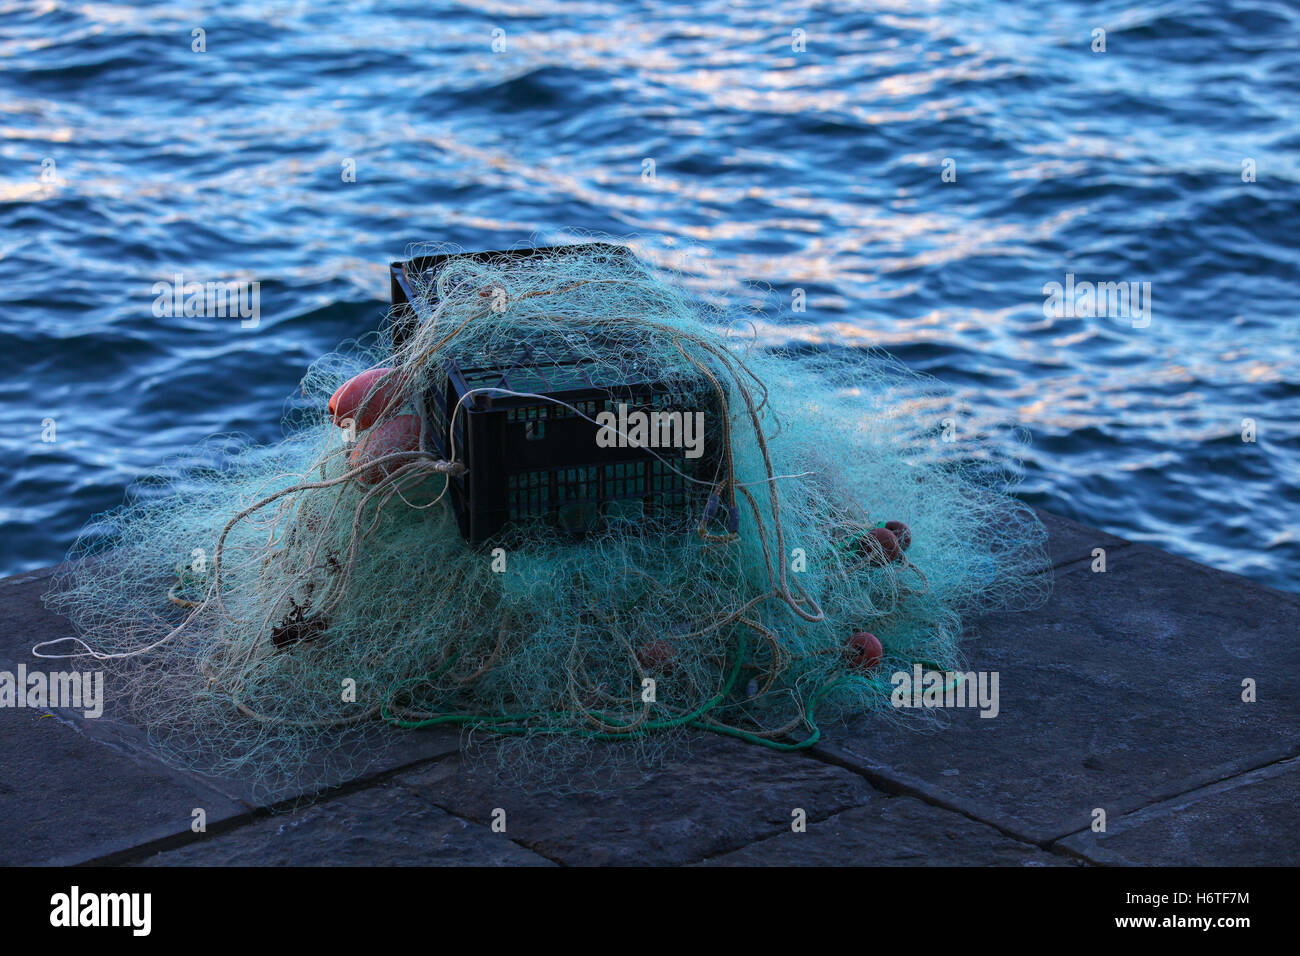 Caja de plástico llena de rojo blanco red de pescar, enormes carrozas cuerda de nylon utilizados en la industria de redes de pesca de nylon trenzado poliestireno flotador. Foto de stock